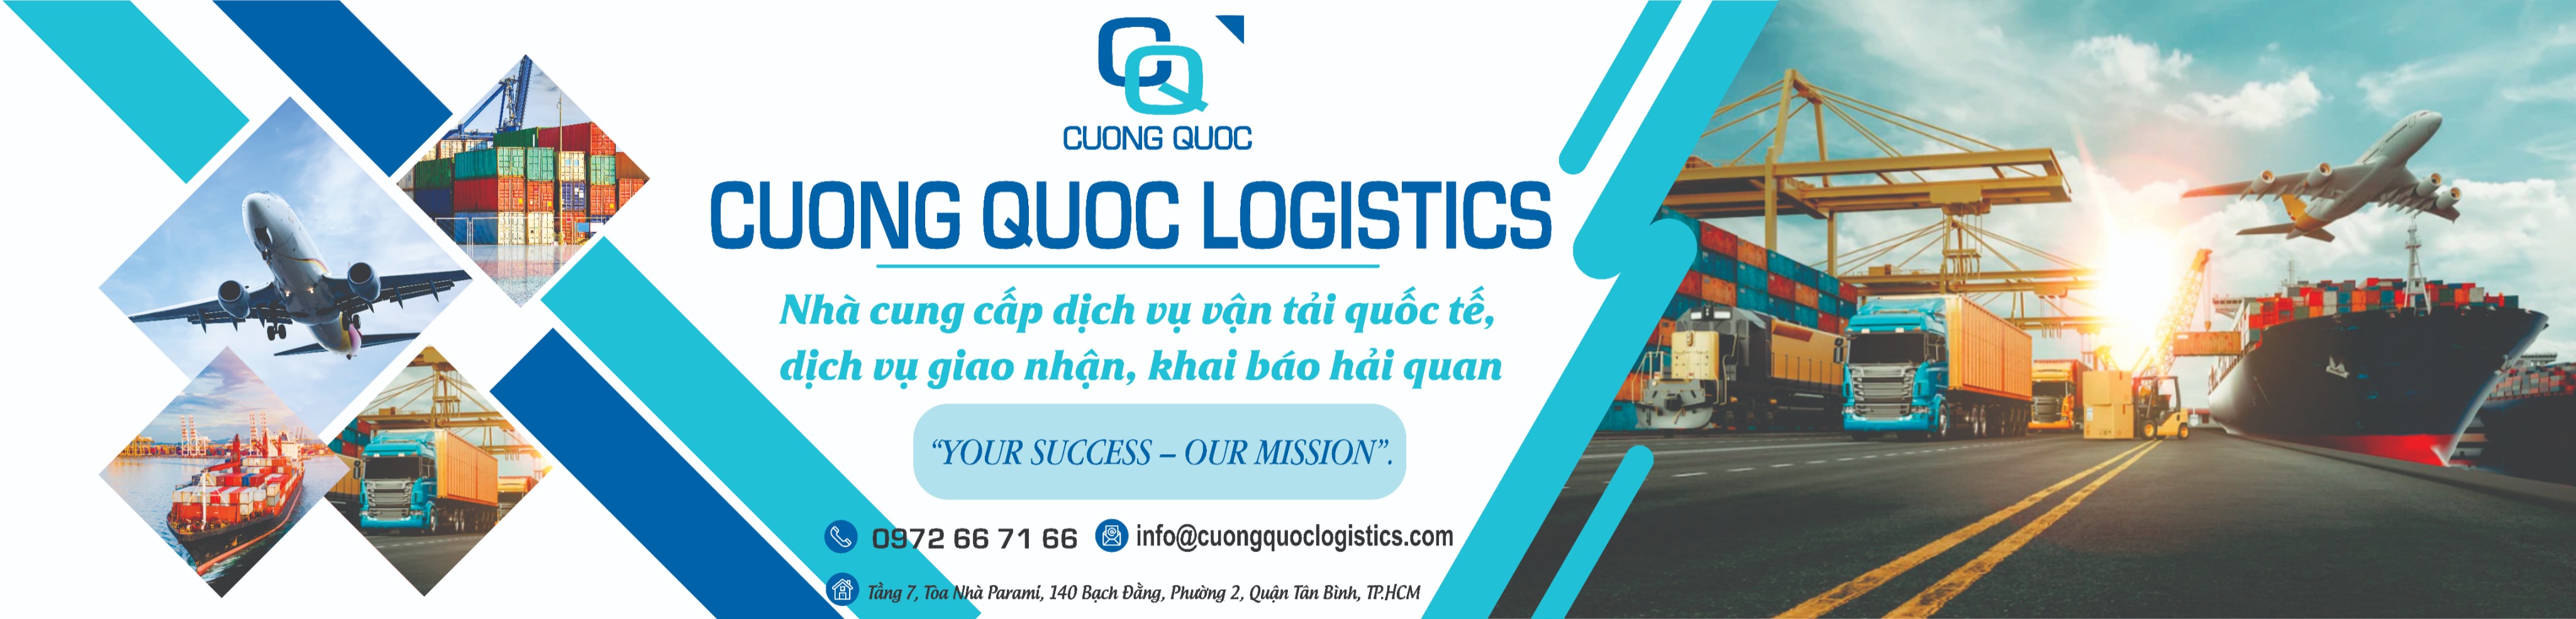 Cuong Quoc Logistics